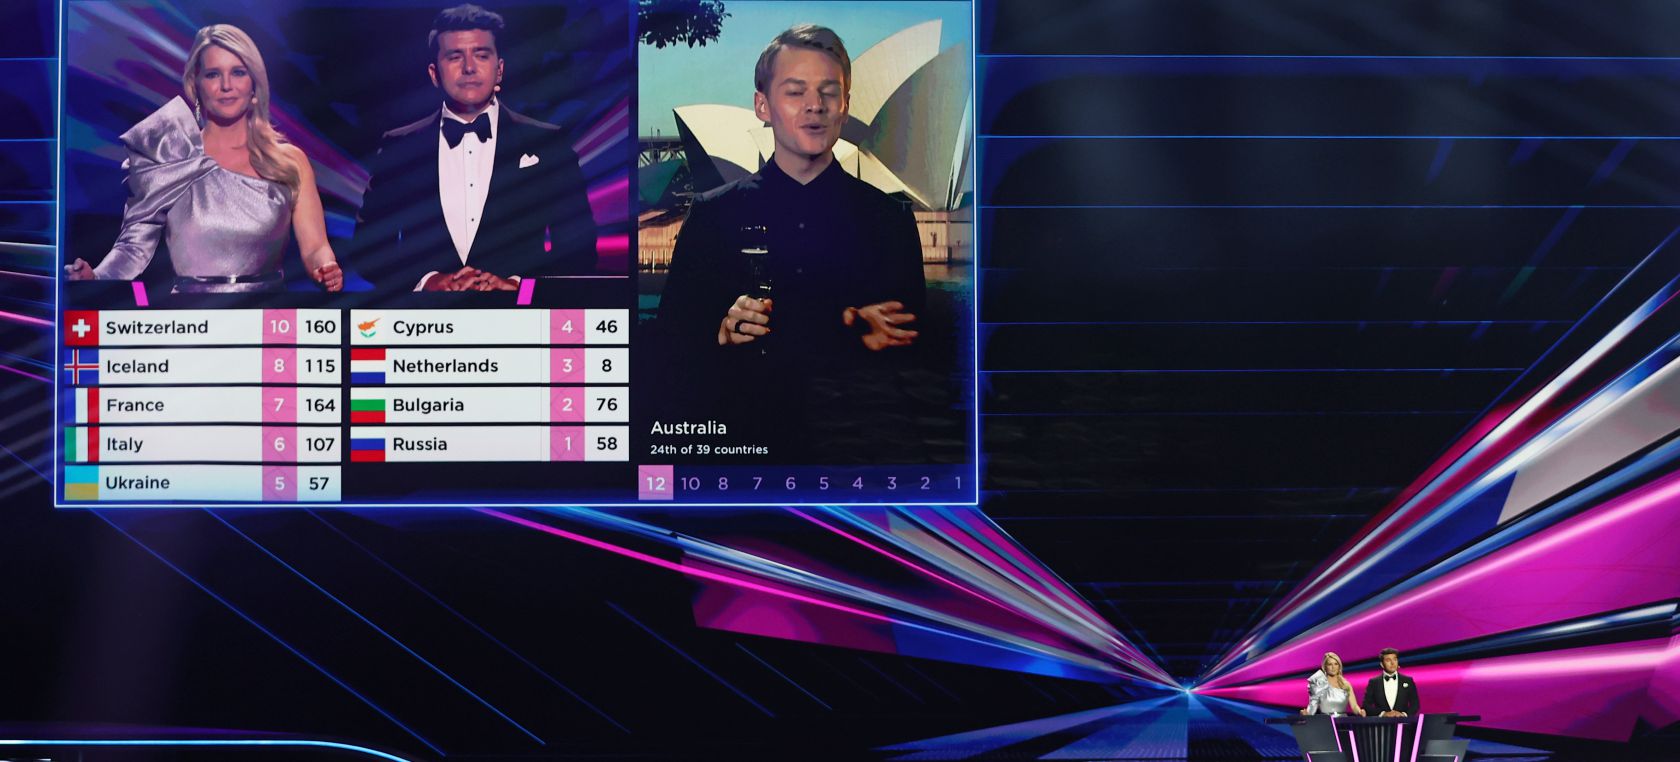 Resultados de Eurovisión 2021: así ha quedado la clasificación del festival